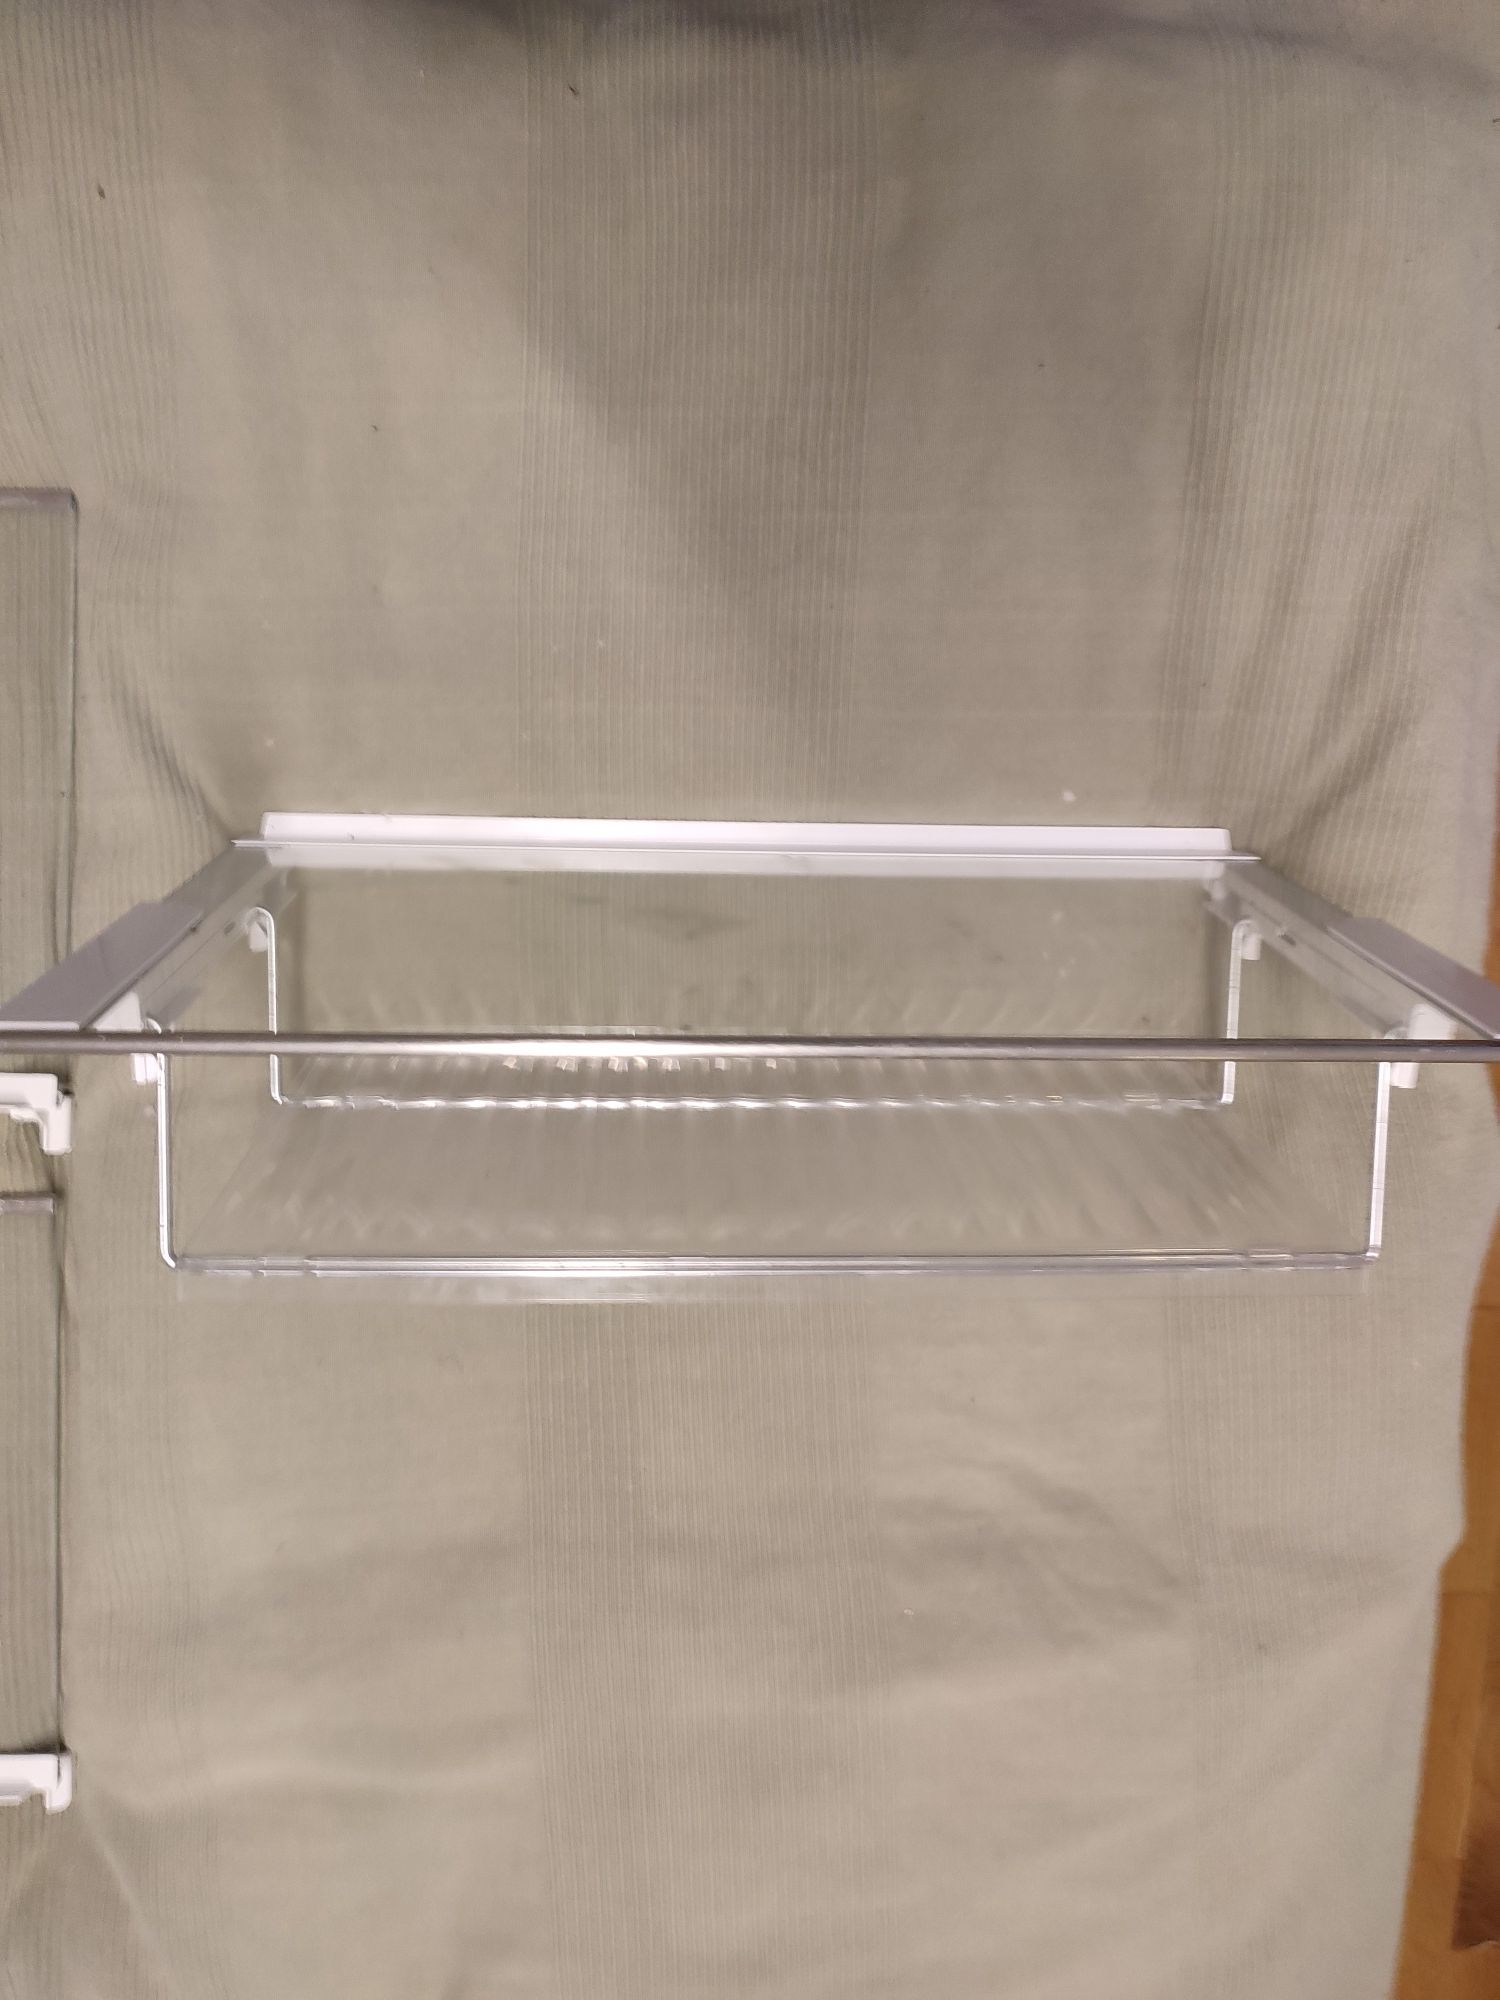 Szklana półka do lodówki Siemens Bosch 70 cm z rozkładaną półką